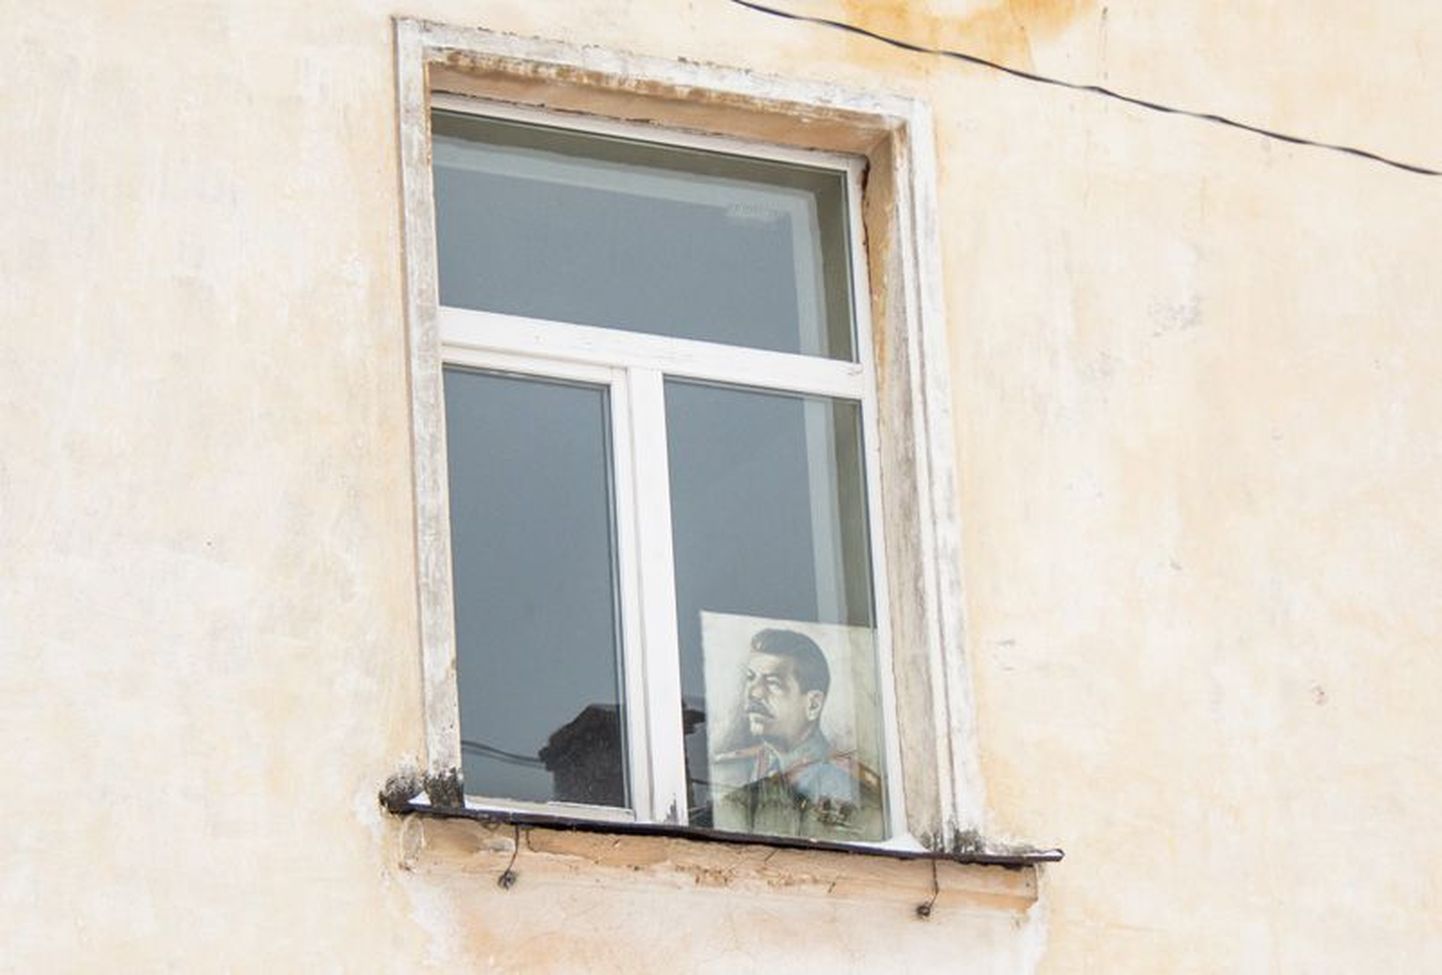 Valdade ühinemine toob meile Stalini kummardajad: ühe Aseri kortermaja aknal seisab meeleolukas Stalini pilt – just nagu muiste. Kohalike sõnul polevat selles väga palju erilist: kui teinekord pidu peetakse, võetakse ka vastavad lipud tuju tekitamiseks välja.